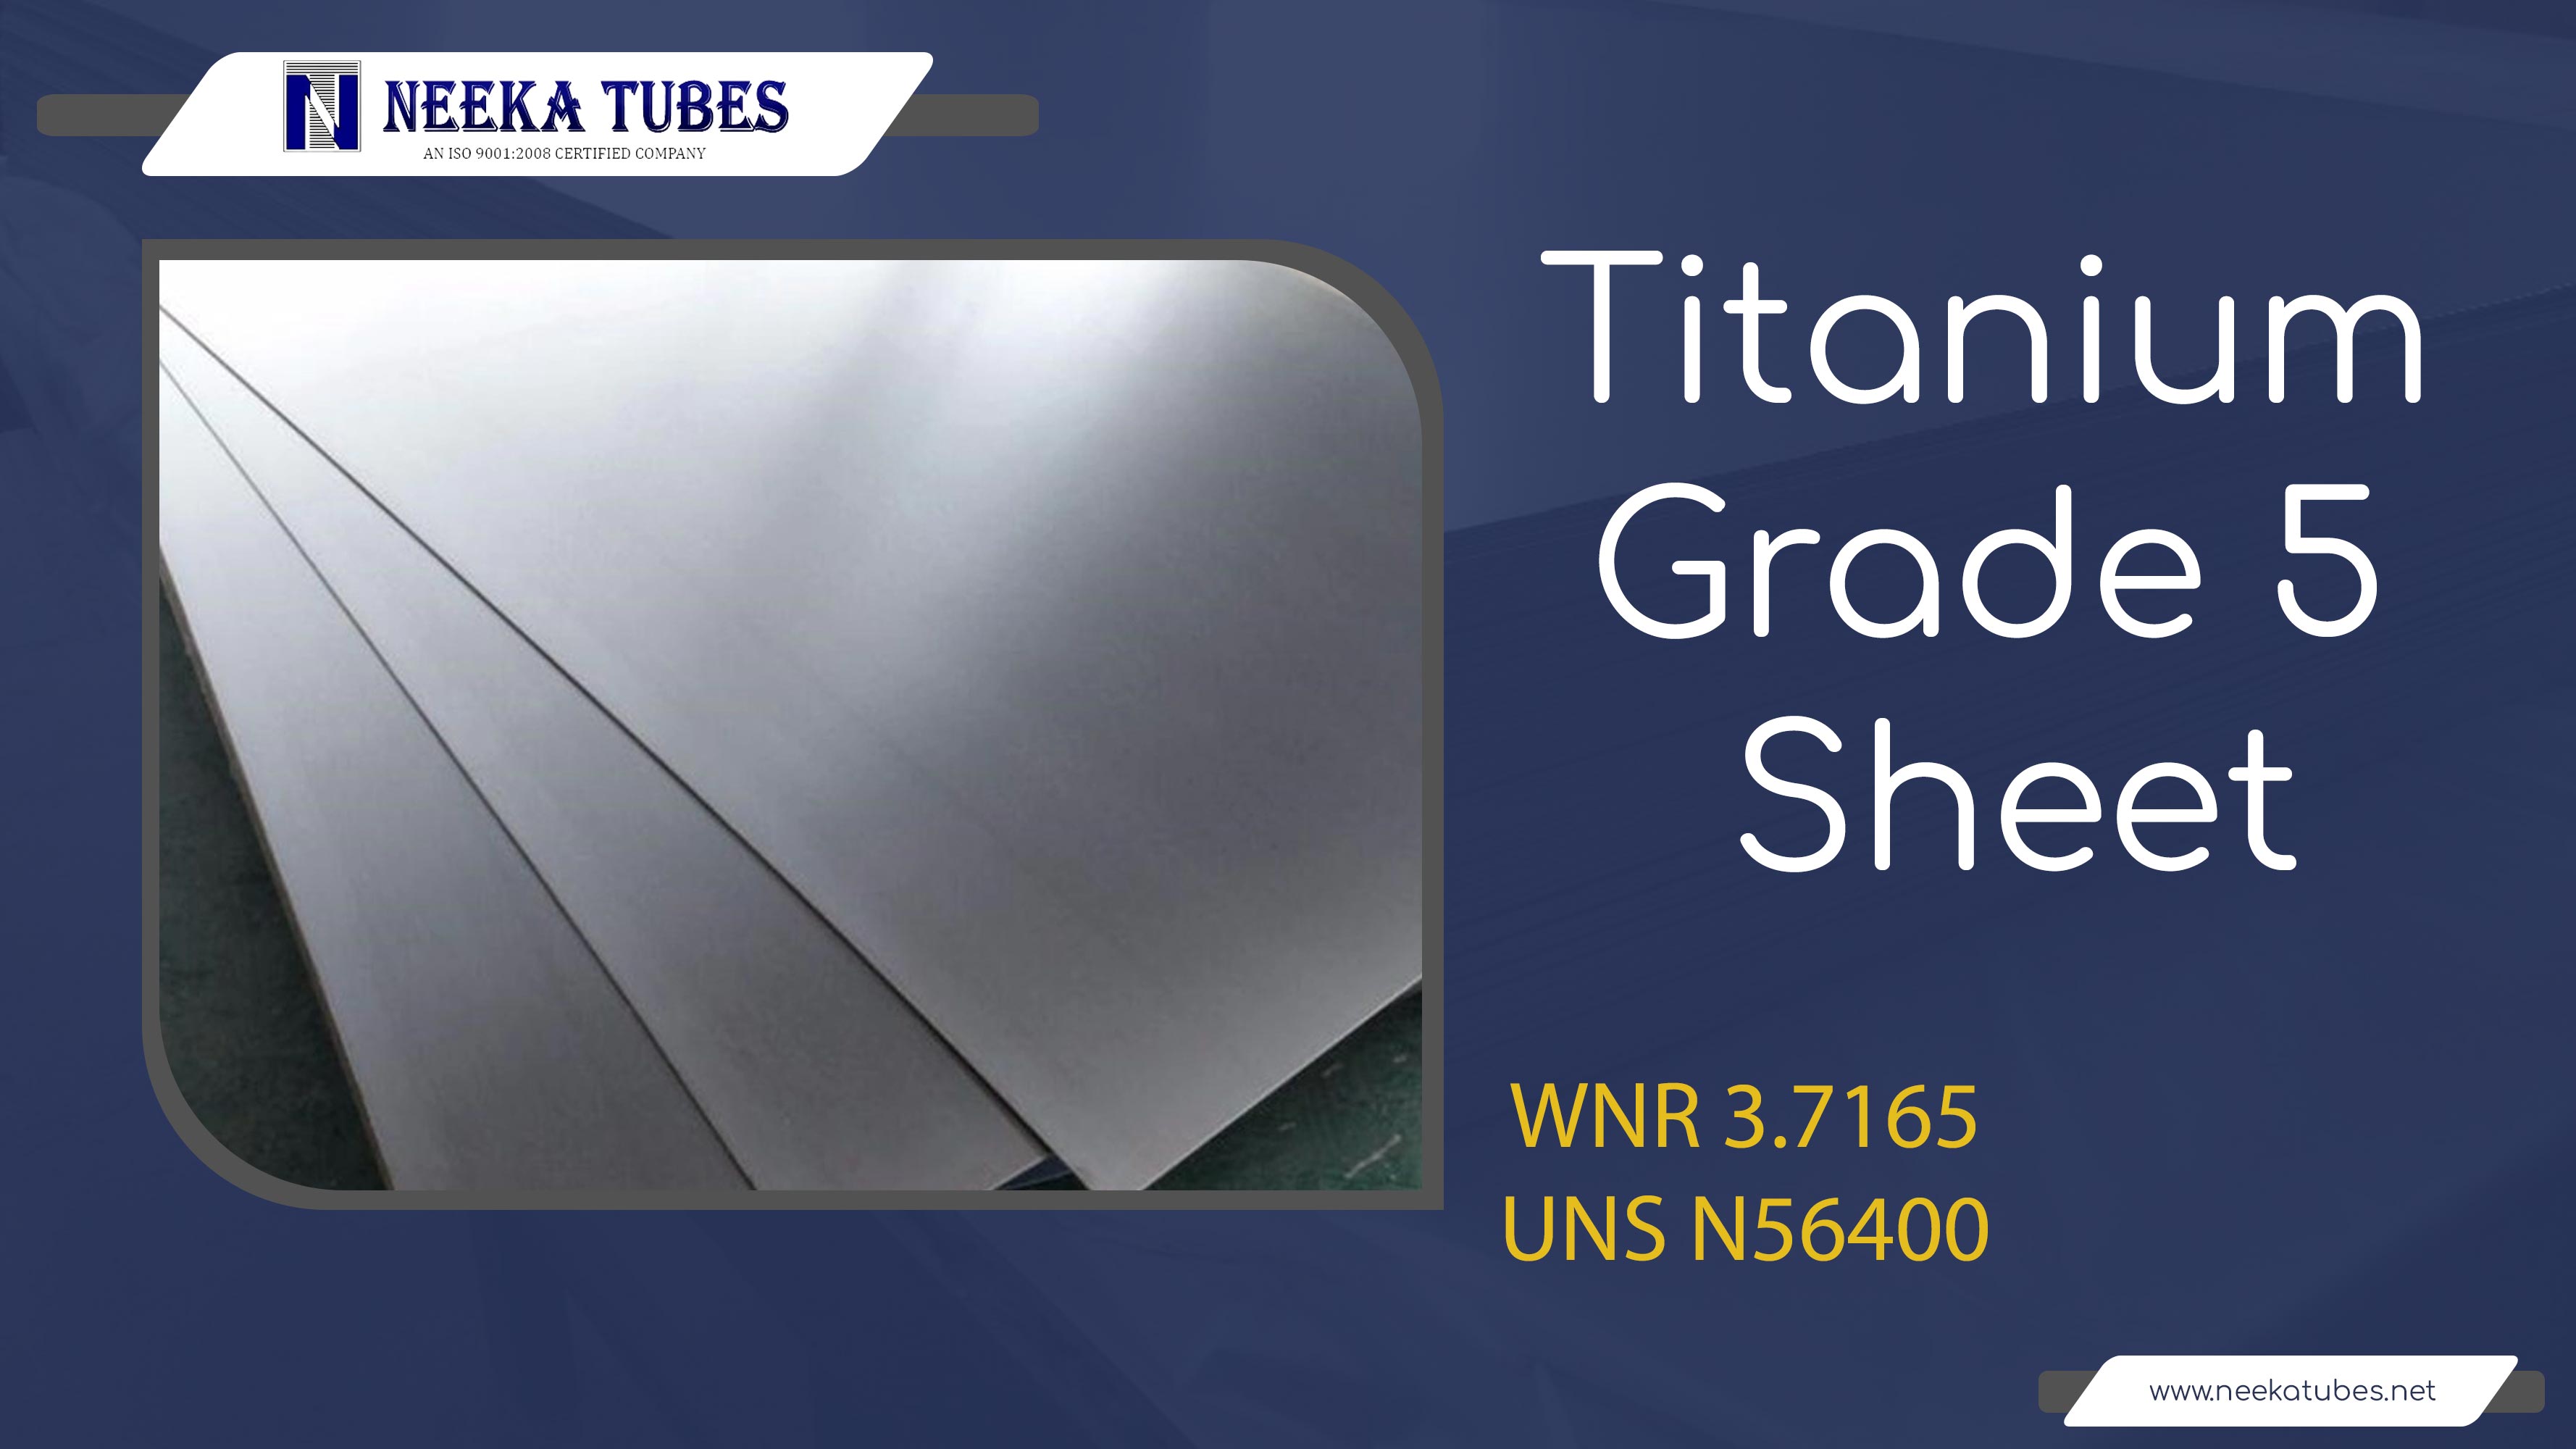 Tittanium grade 5 sheet